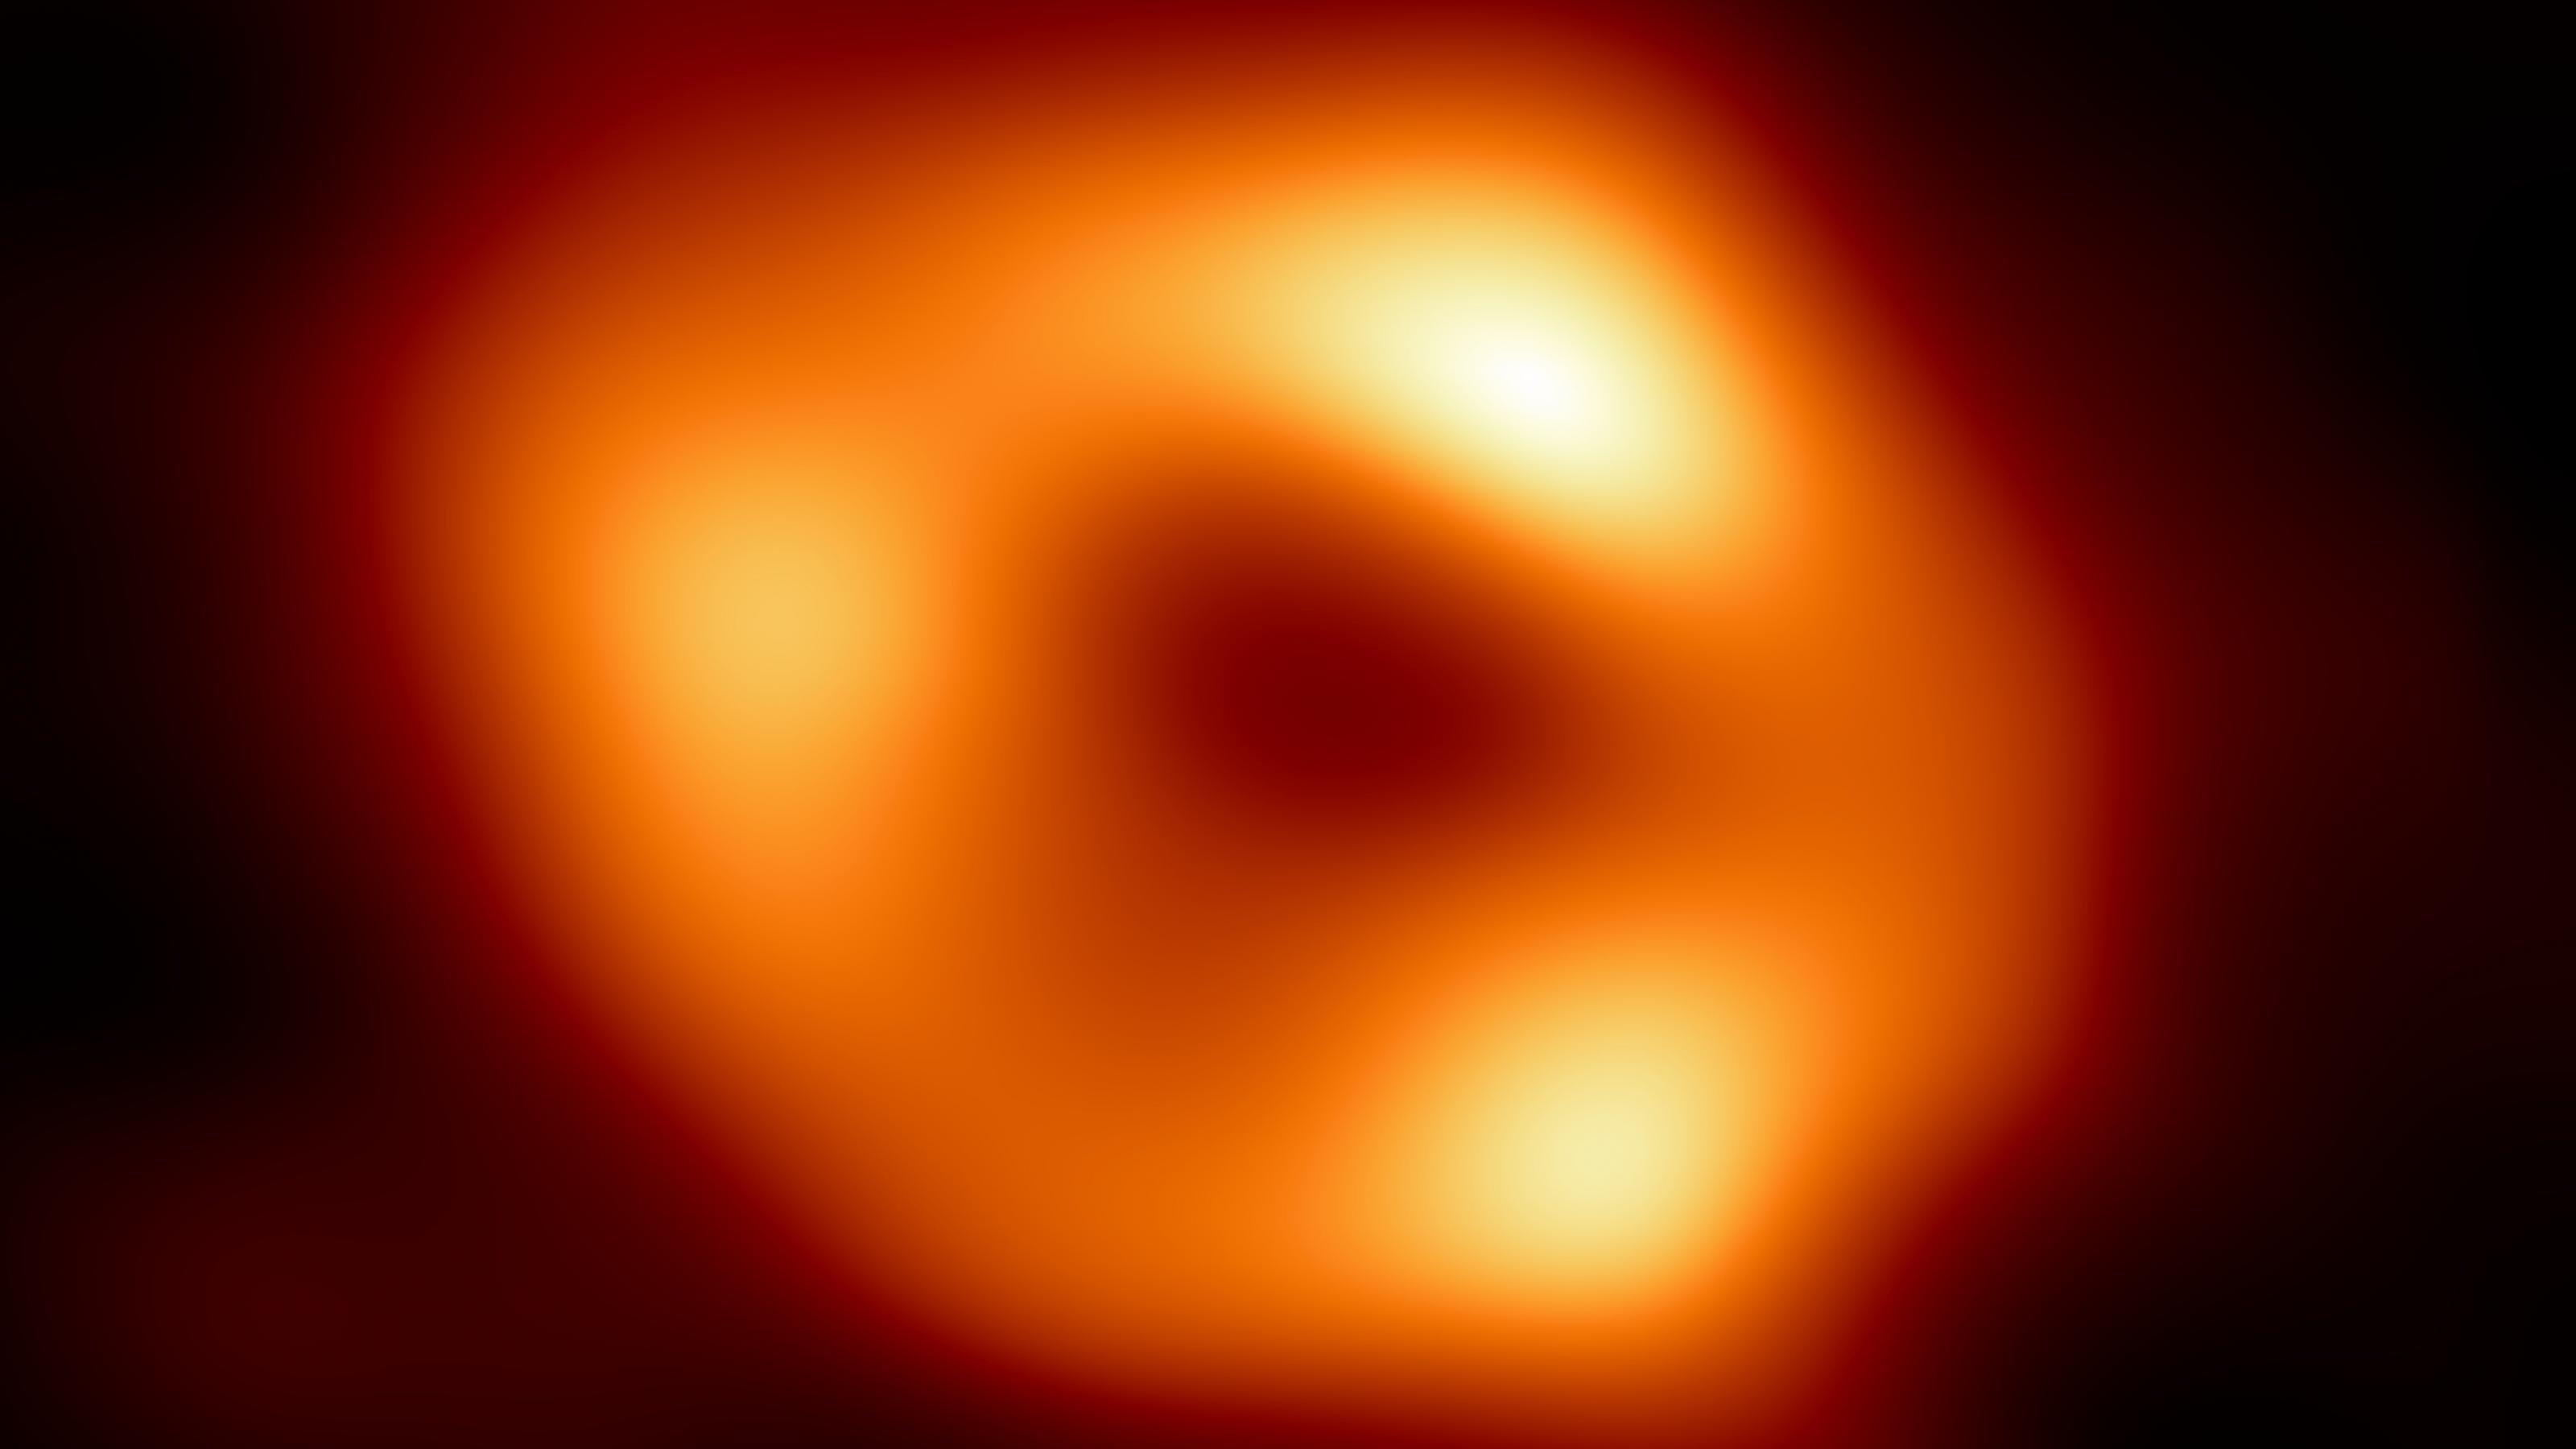 Das Bild zeigt einen orangefarbenen Ring mit asymmetrischen Verdickungen vor schwarzem Hintergrund.